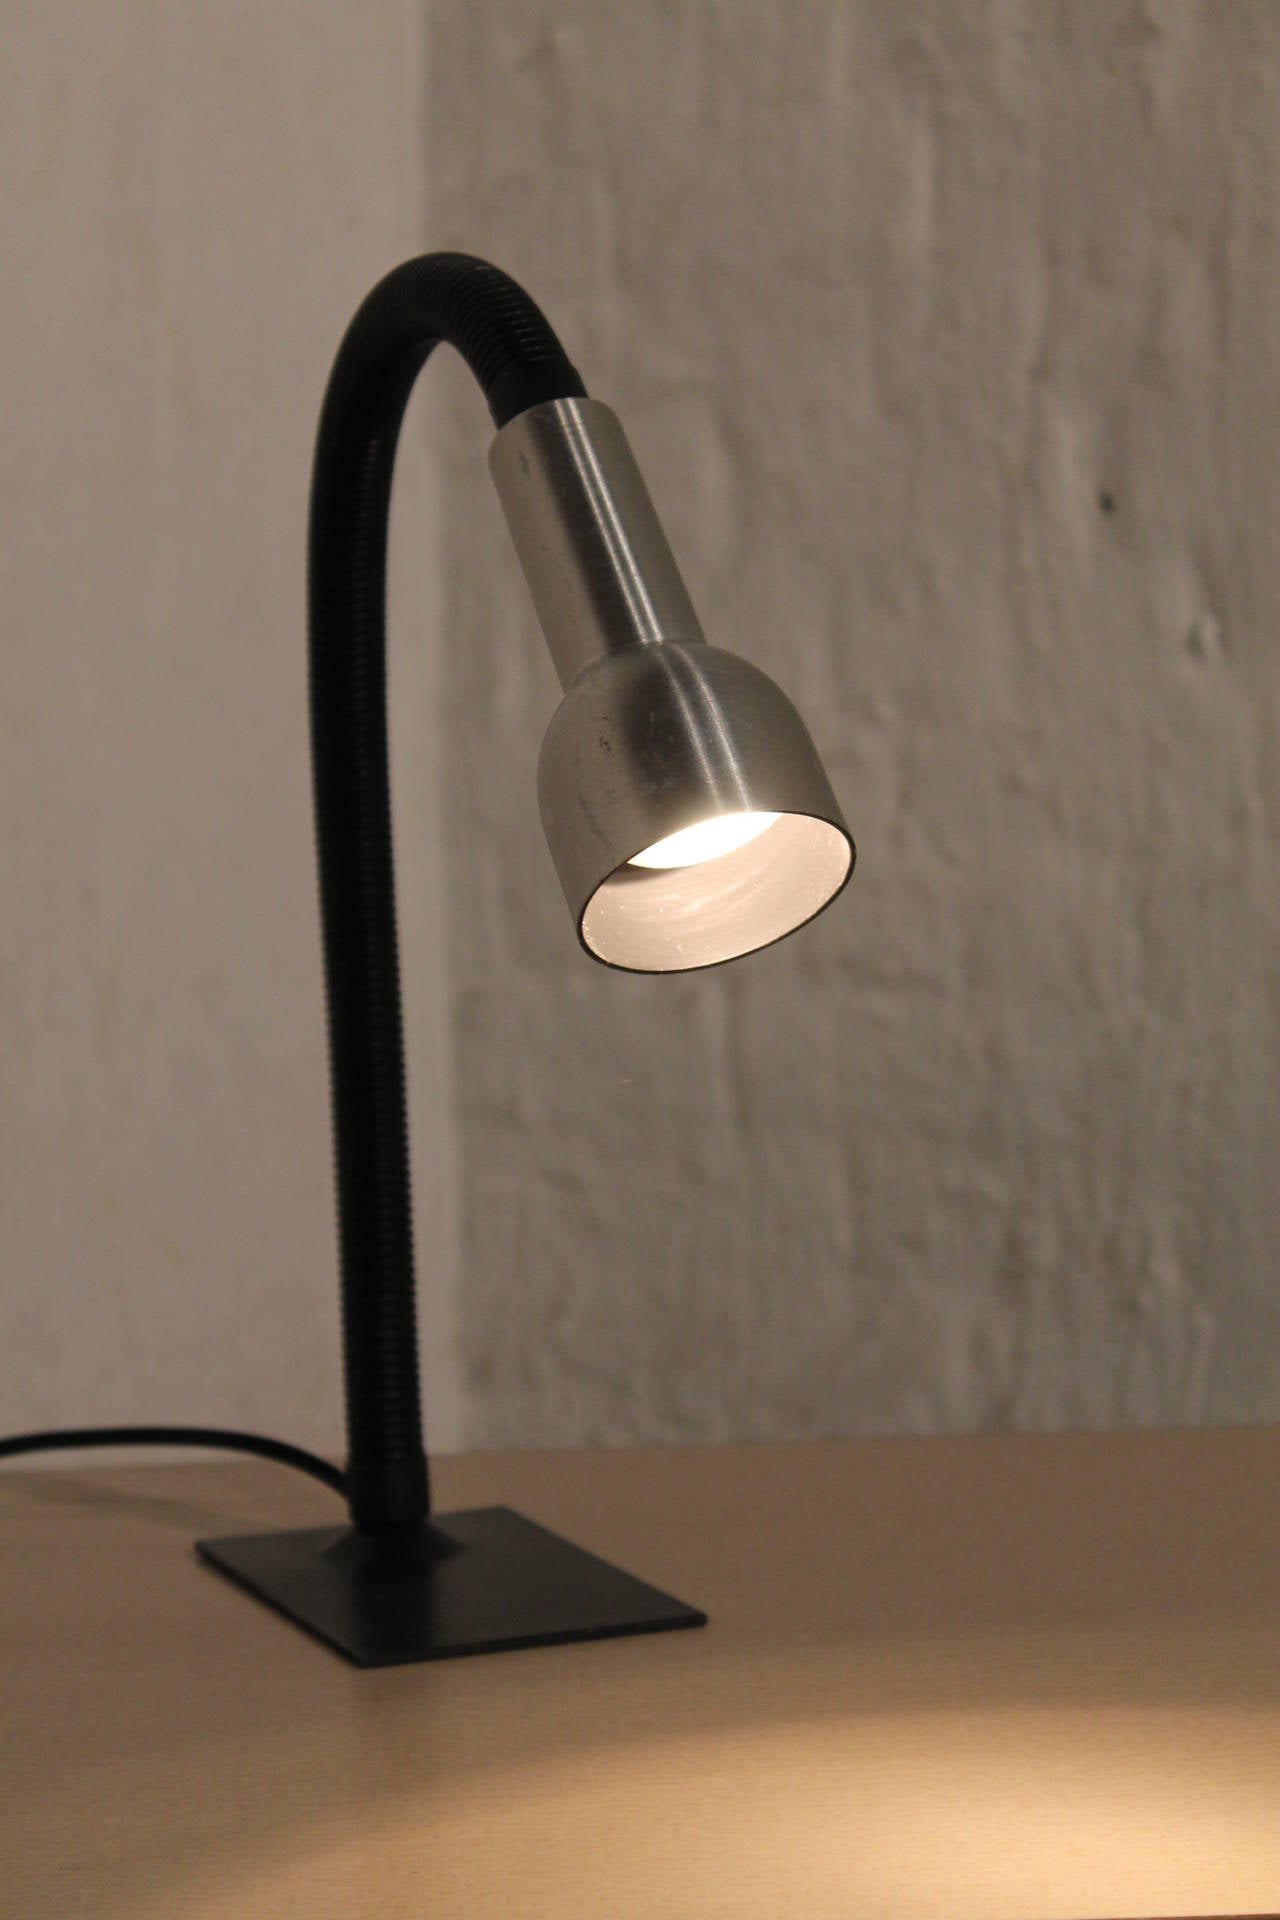 Aluminum Desk Lamp by RAAK, Amsterdam, Holland